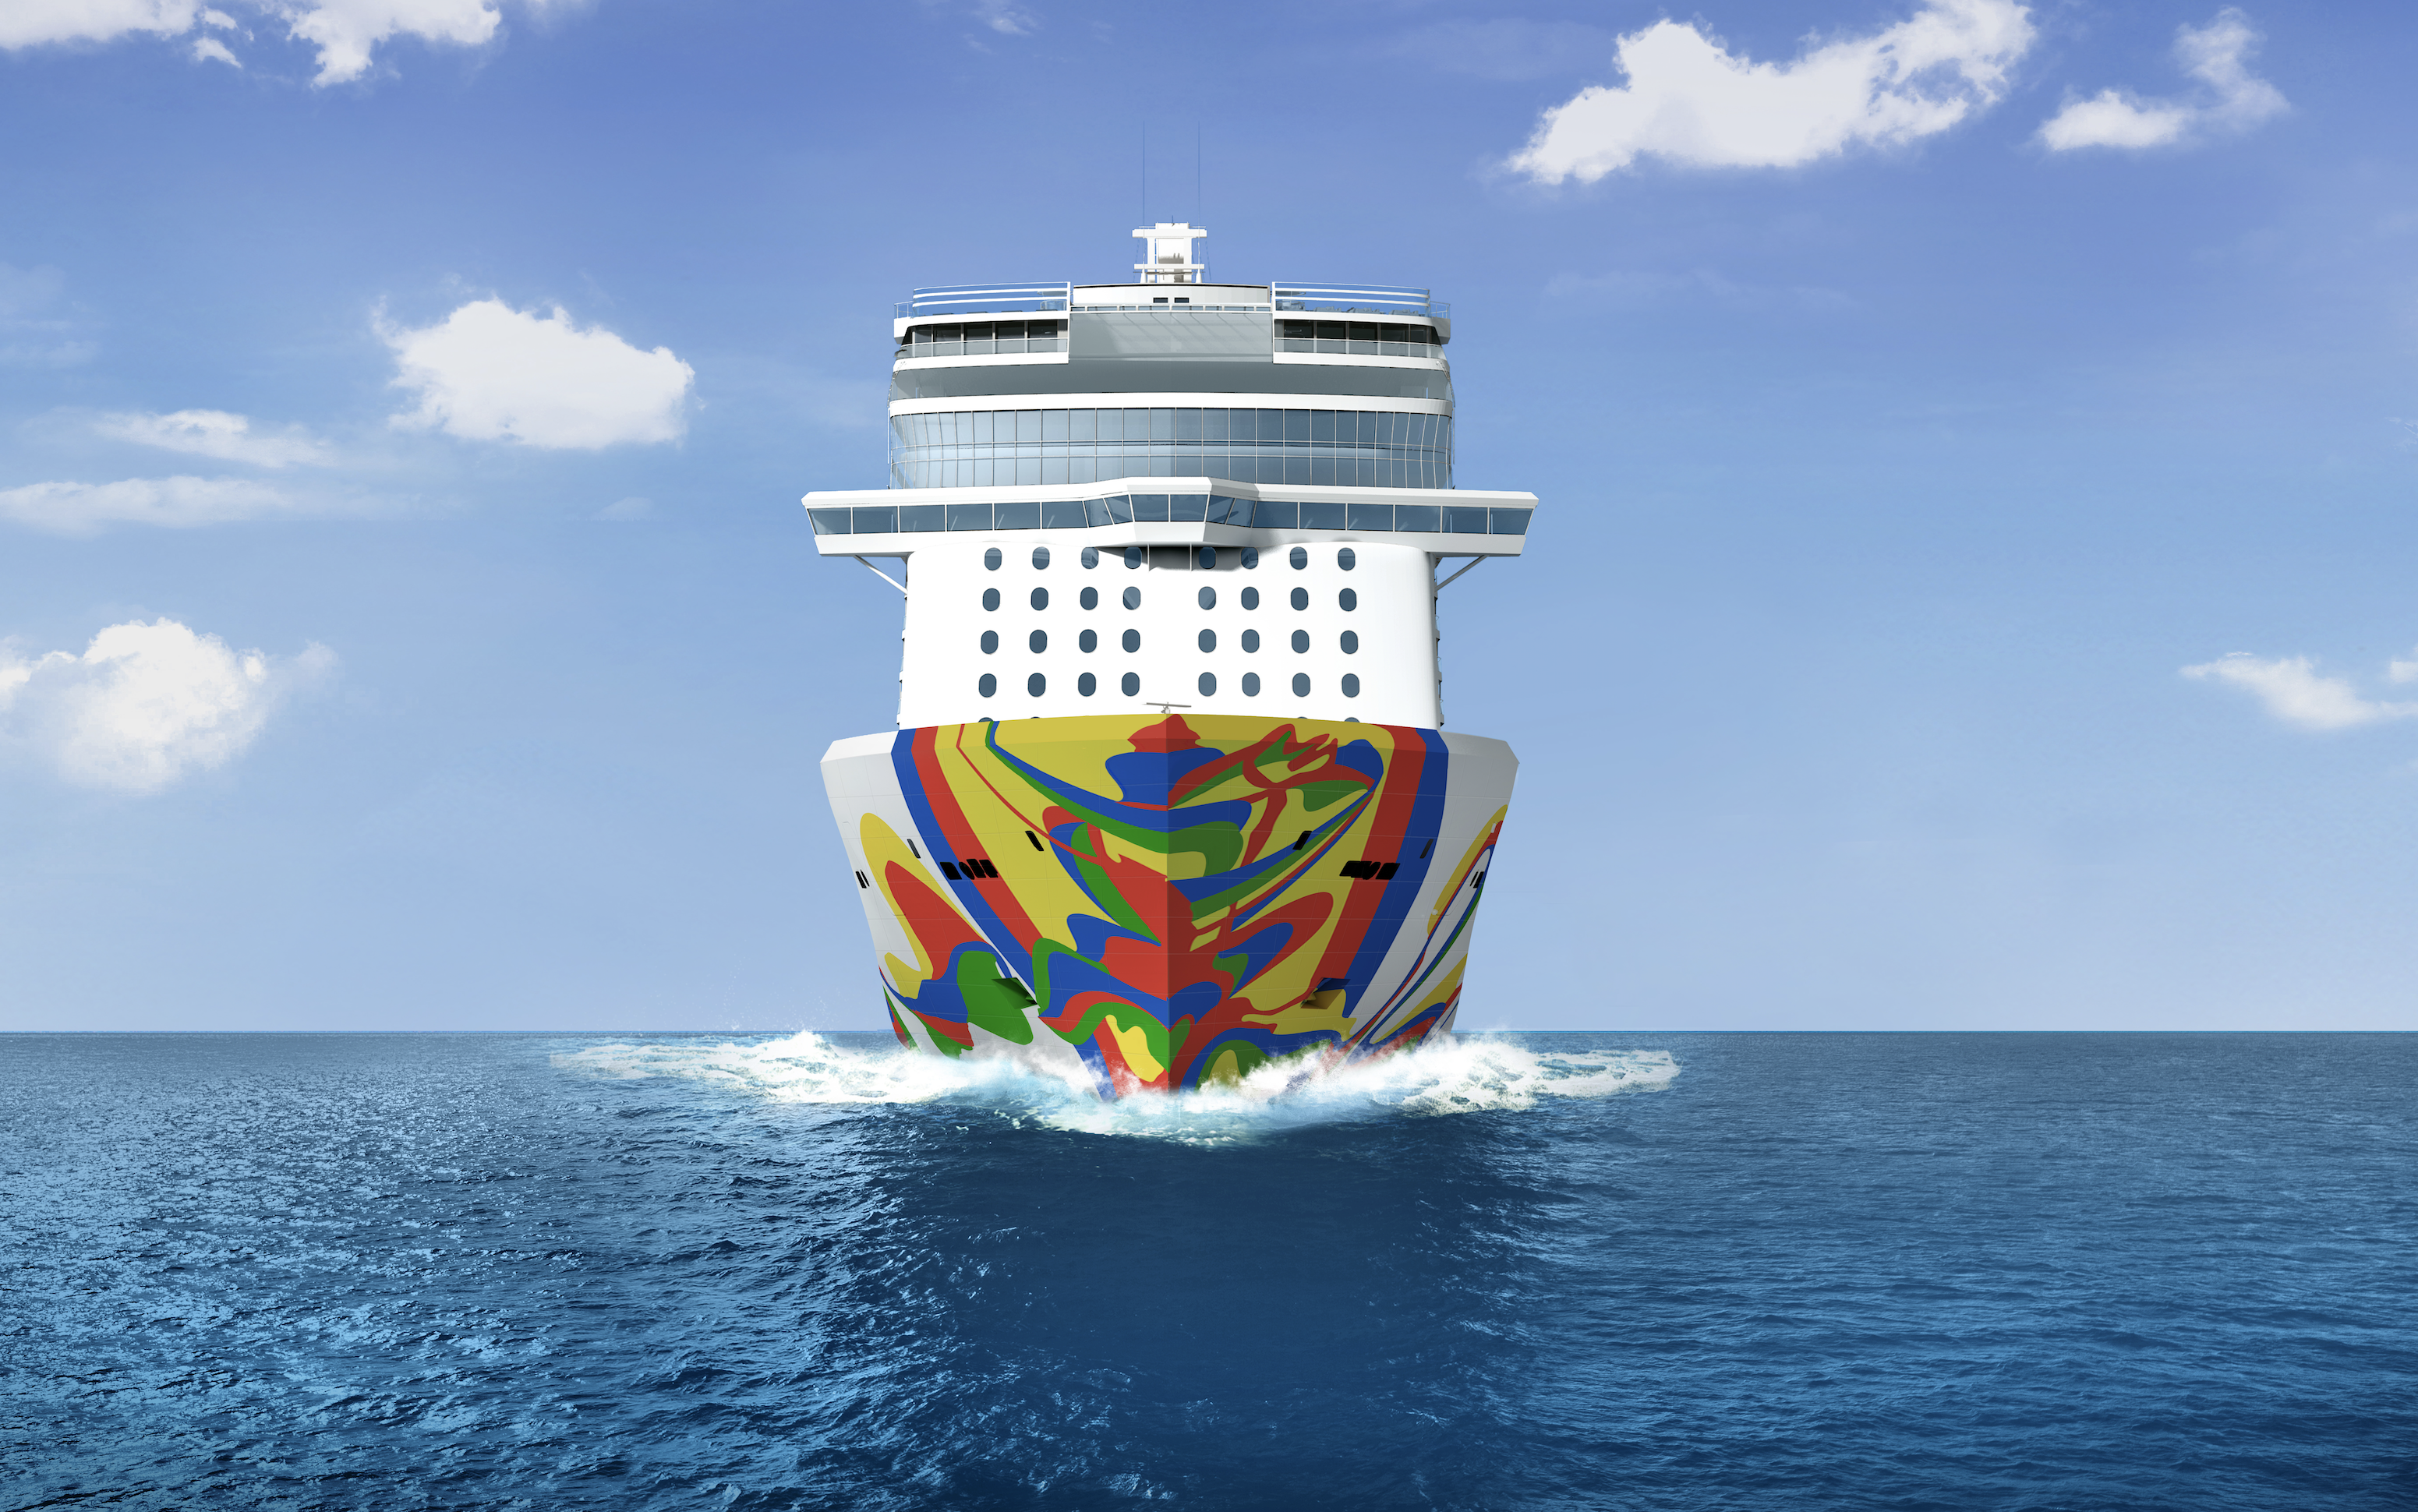 Norwegian Cruise Line reveals new 2020 itineraries